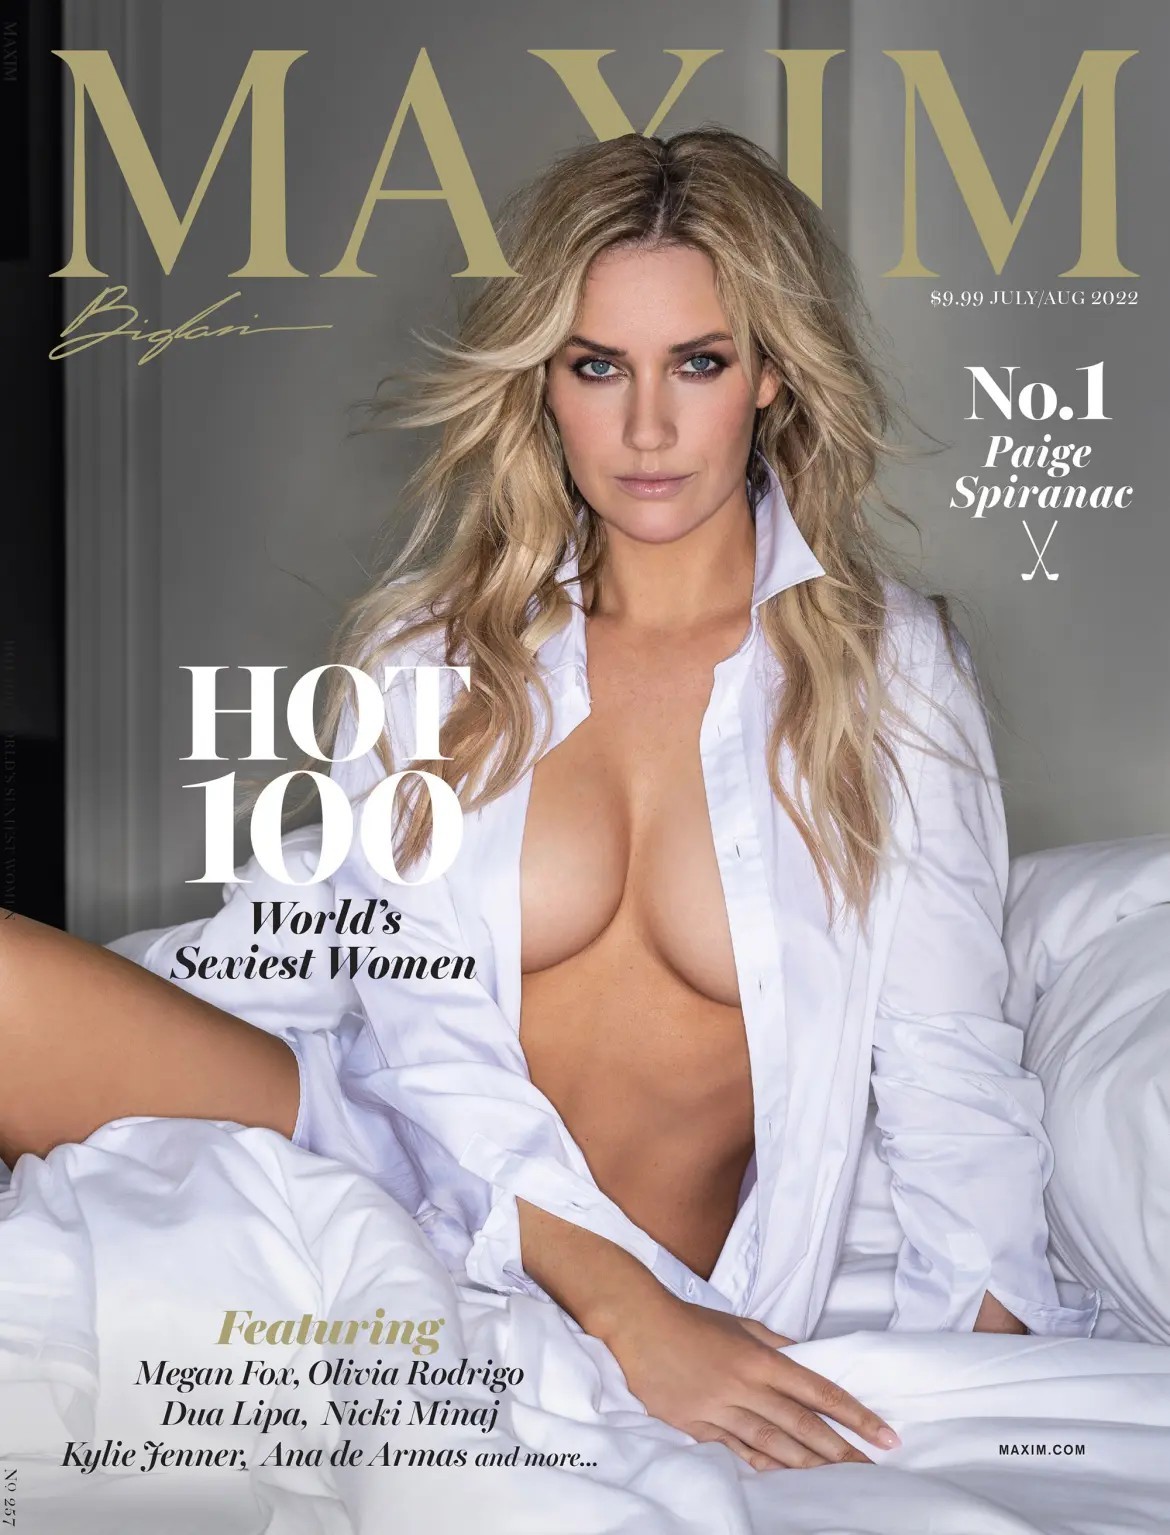 Paige "La Mujer más Sexy del mundo" en la lista Hot 100 de Maxim |